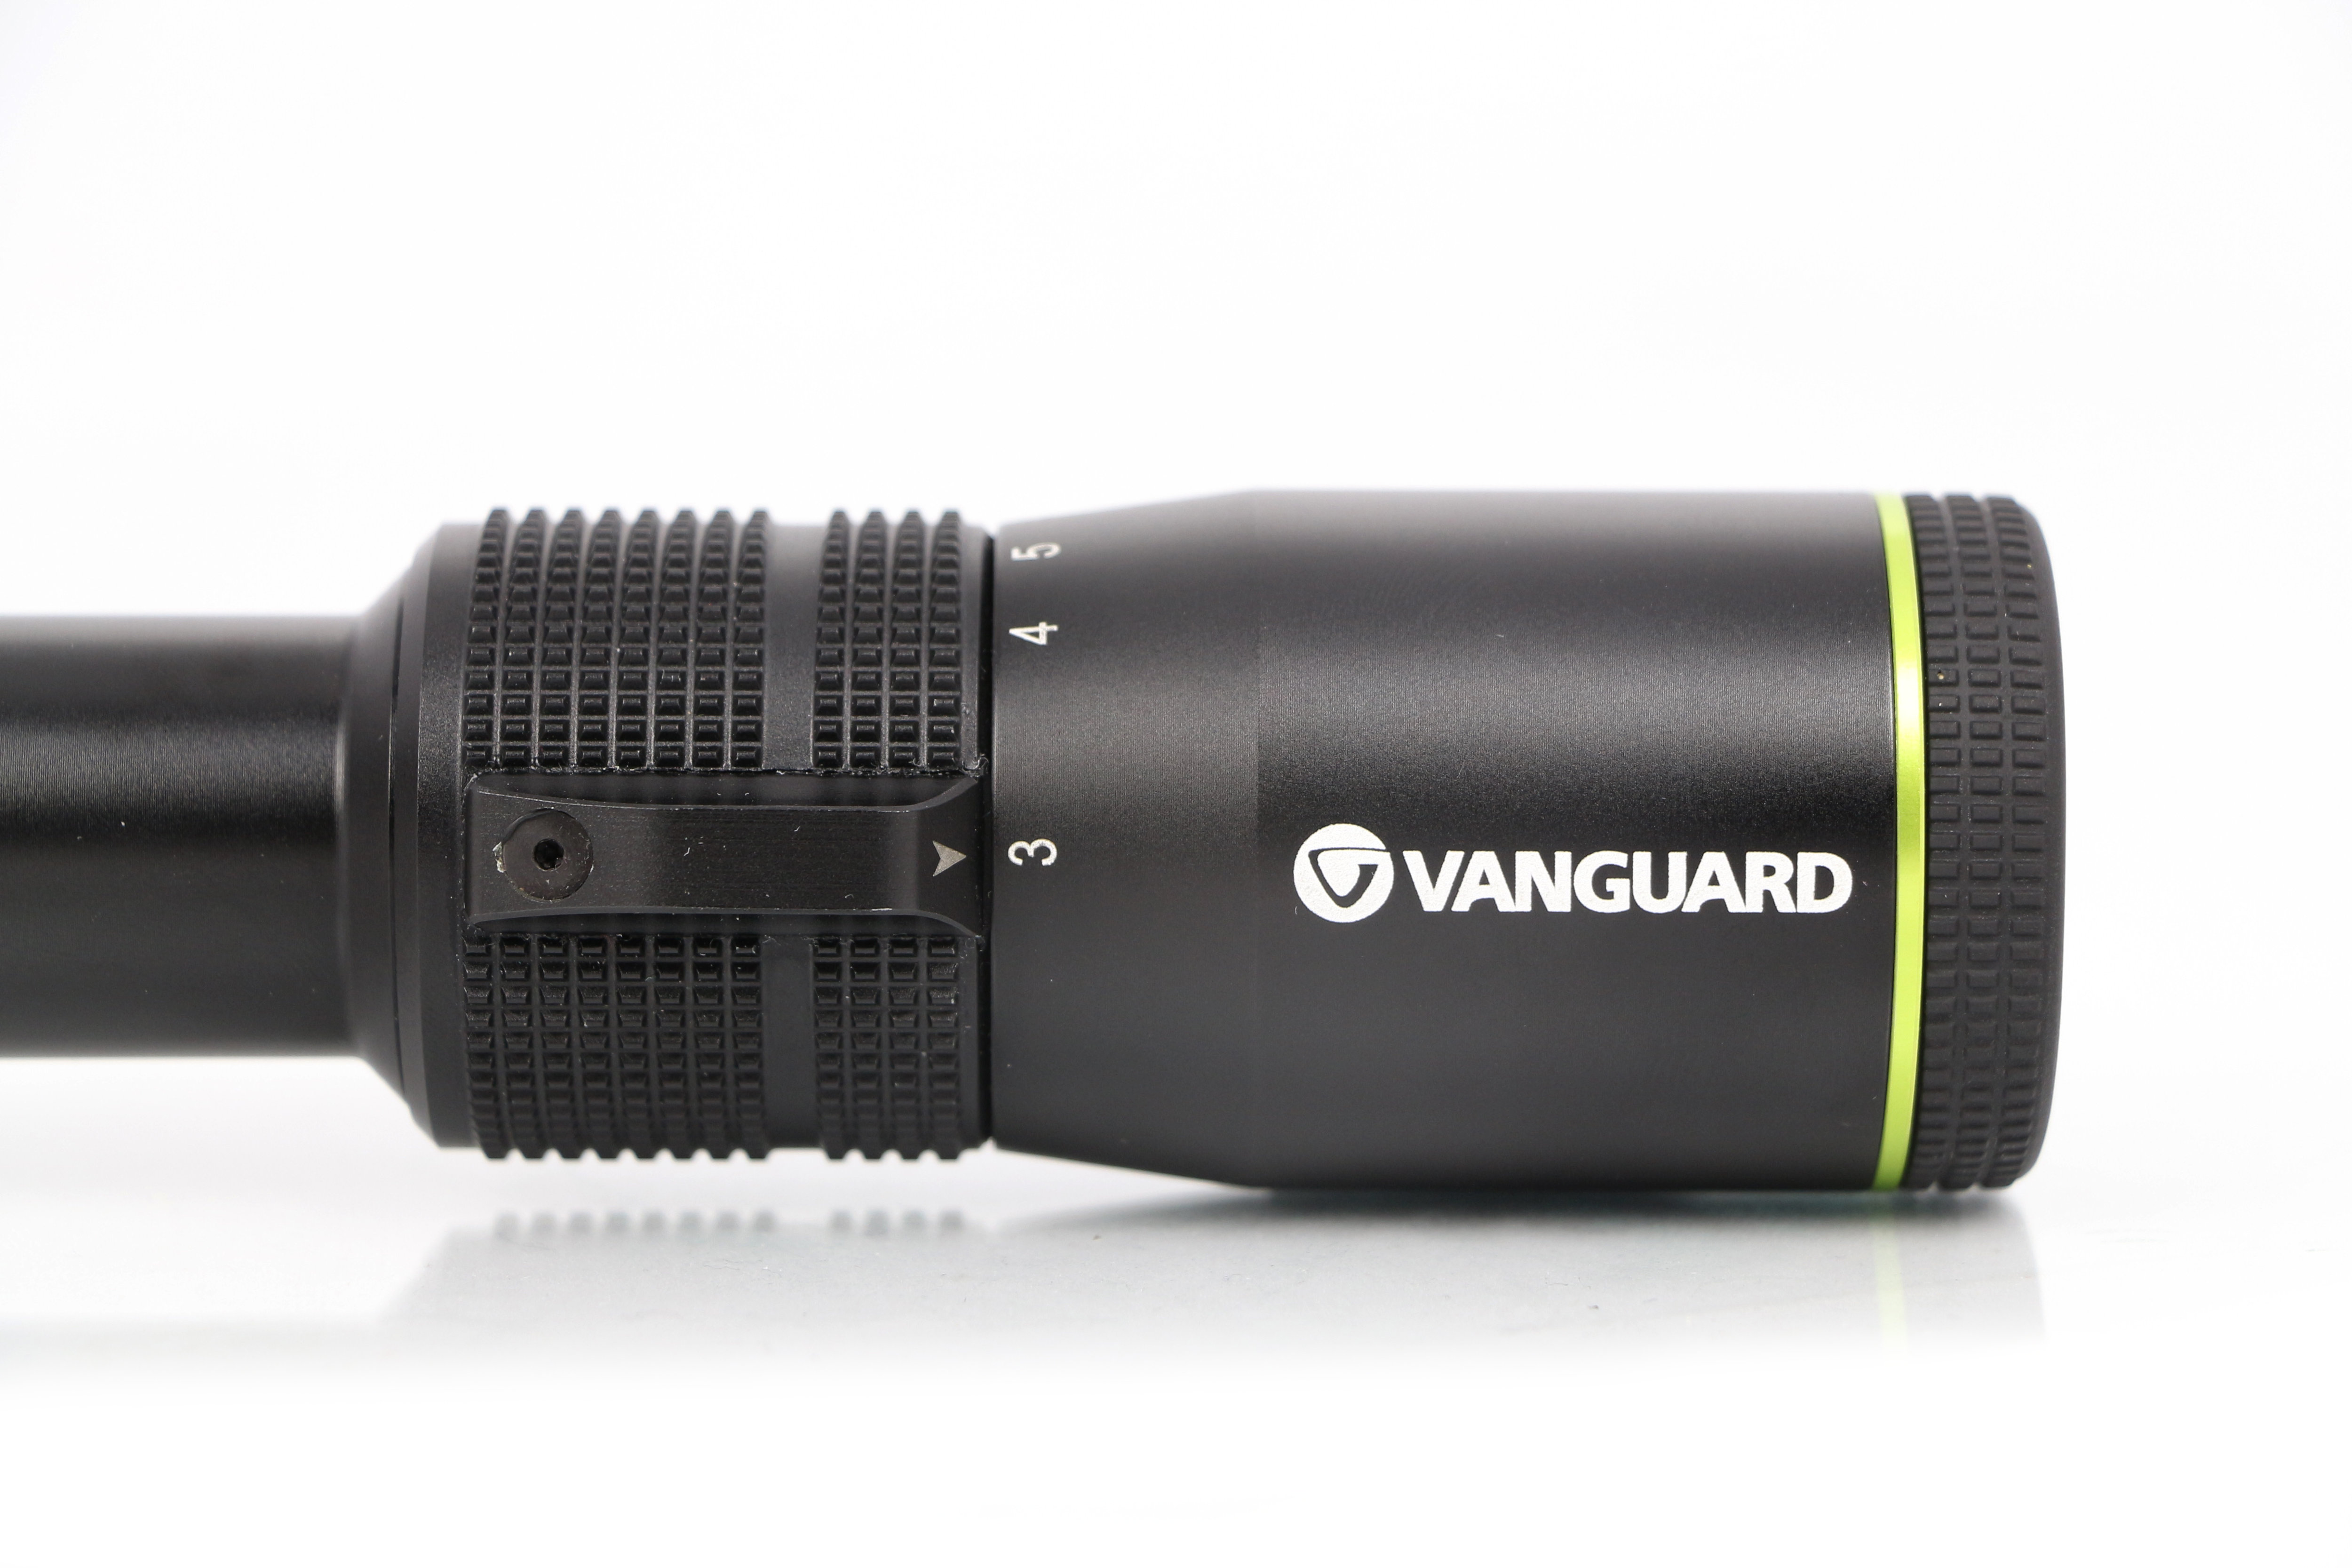 Прицел Vanguard Endeavor RS 3.5-10x40 D, сетка Duplex купить по оптимальной цене,  доставка по России, гарантия качества